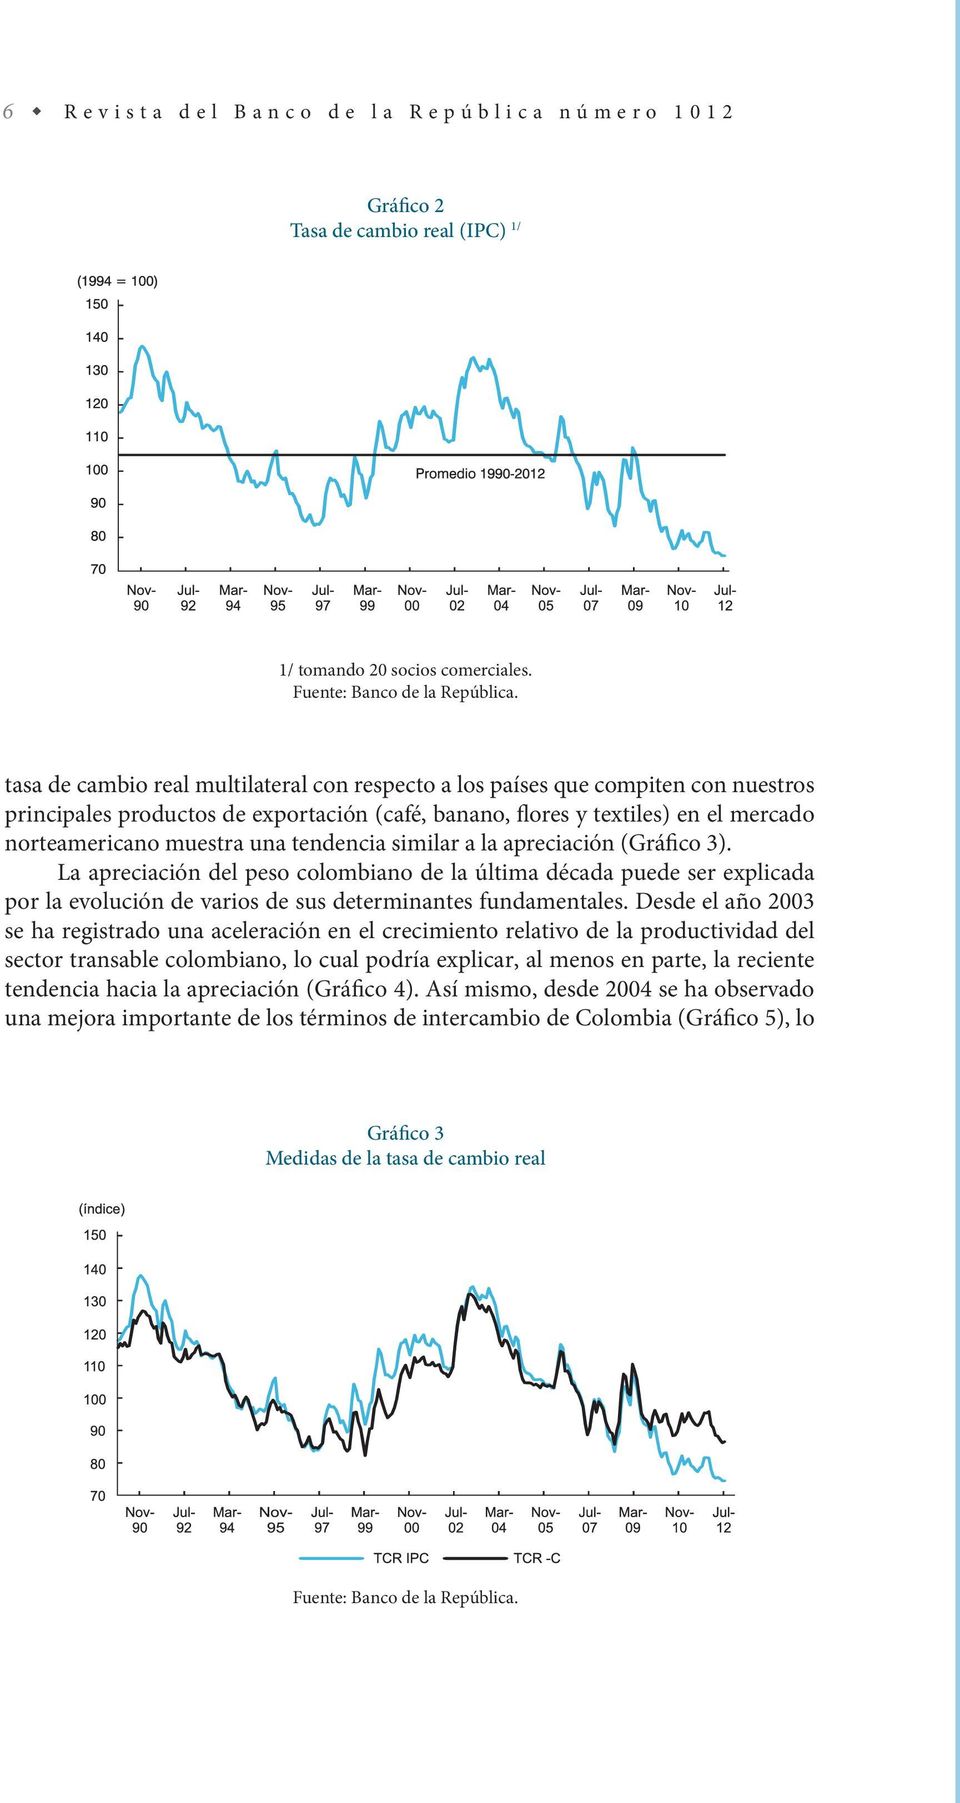 tendencia similar a la apreciación (Gráfico 3). La apreciación del peso colombiano de la última década puede ser explicada por la evolución de varios de sus determinantes fundamentales.